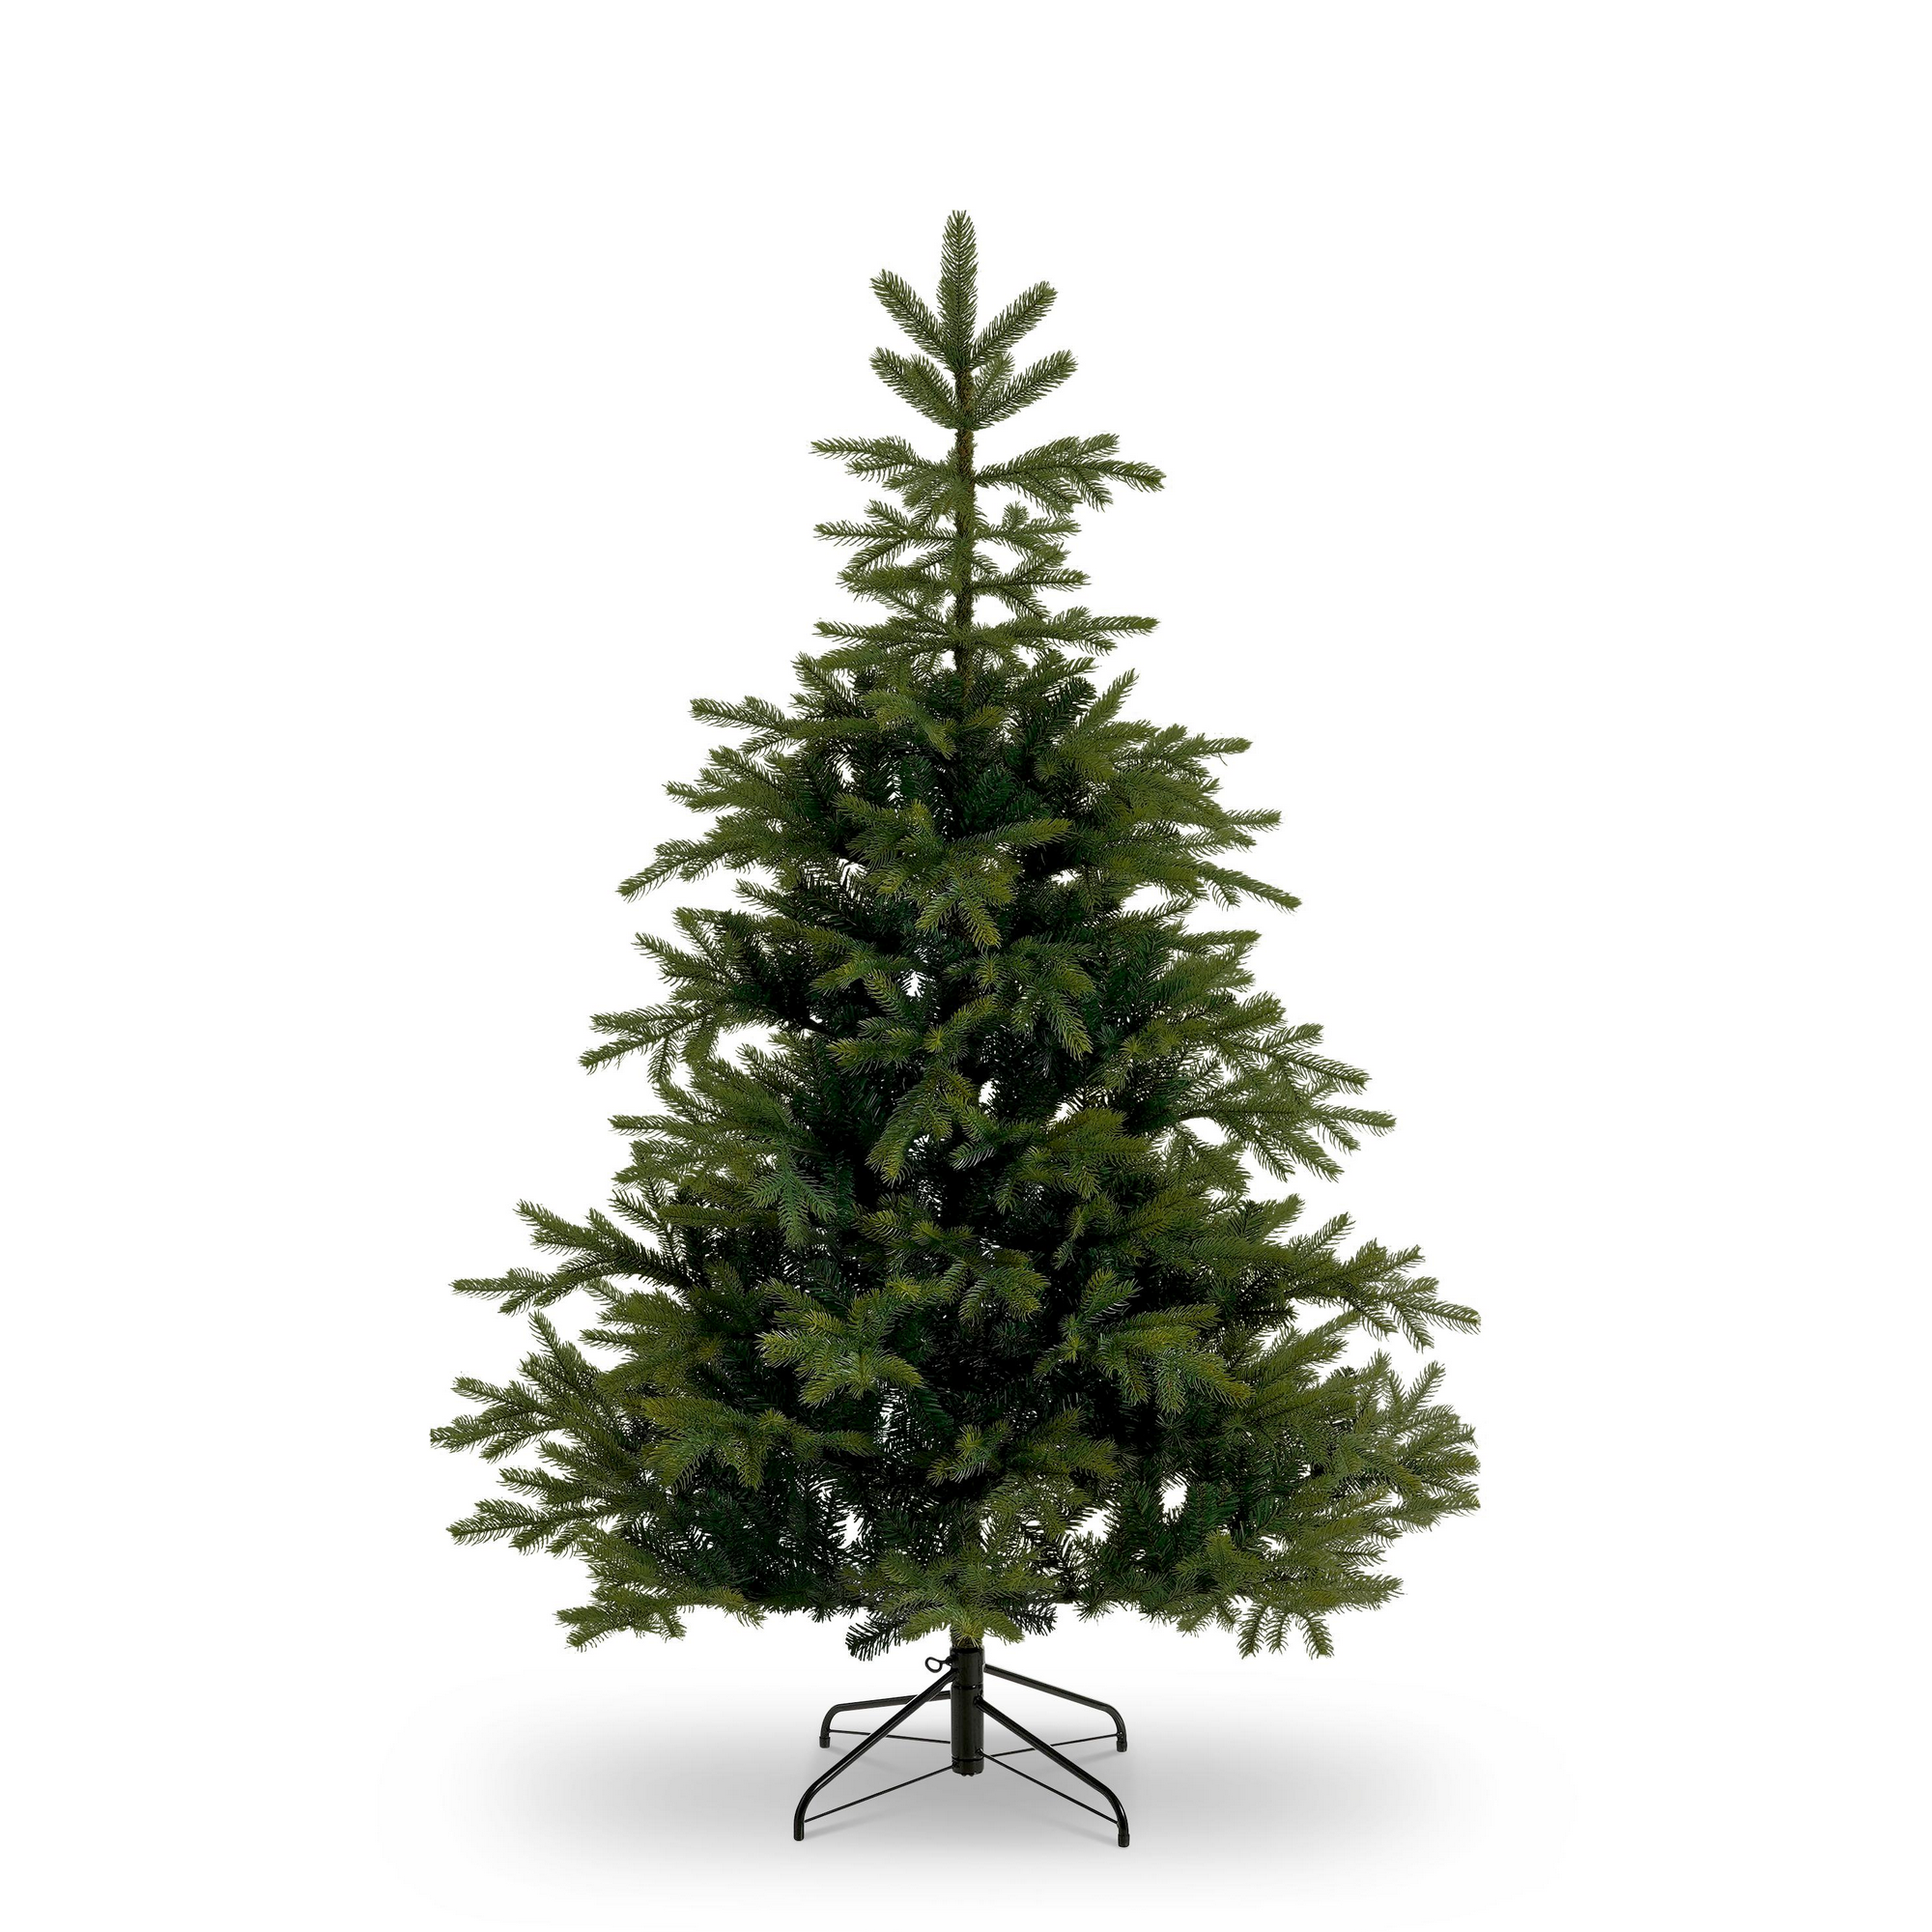 Künstlicher Weihnachtsbaum 'Fernie' grün inklusive Ständer 215 cm + product picture